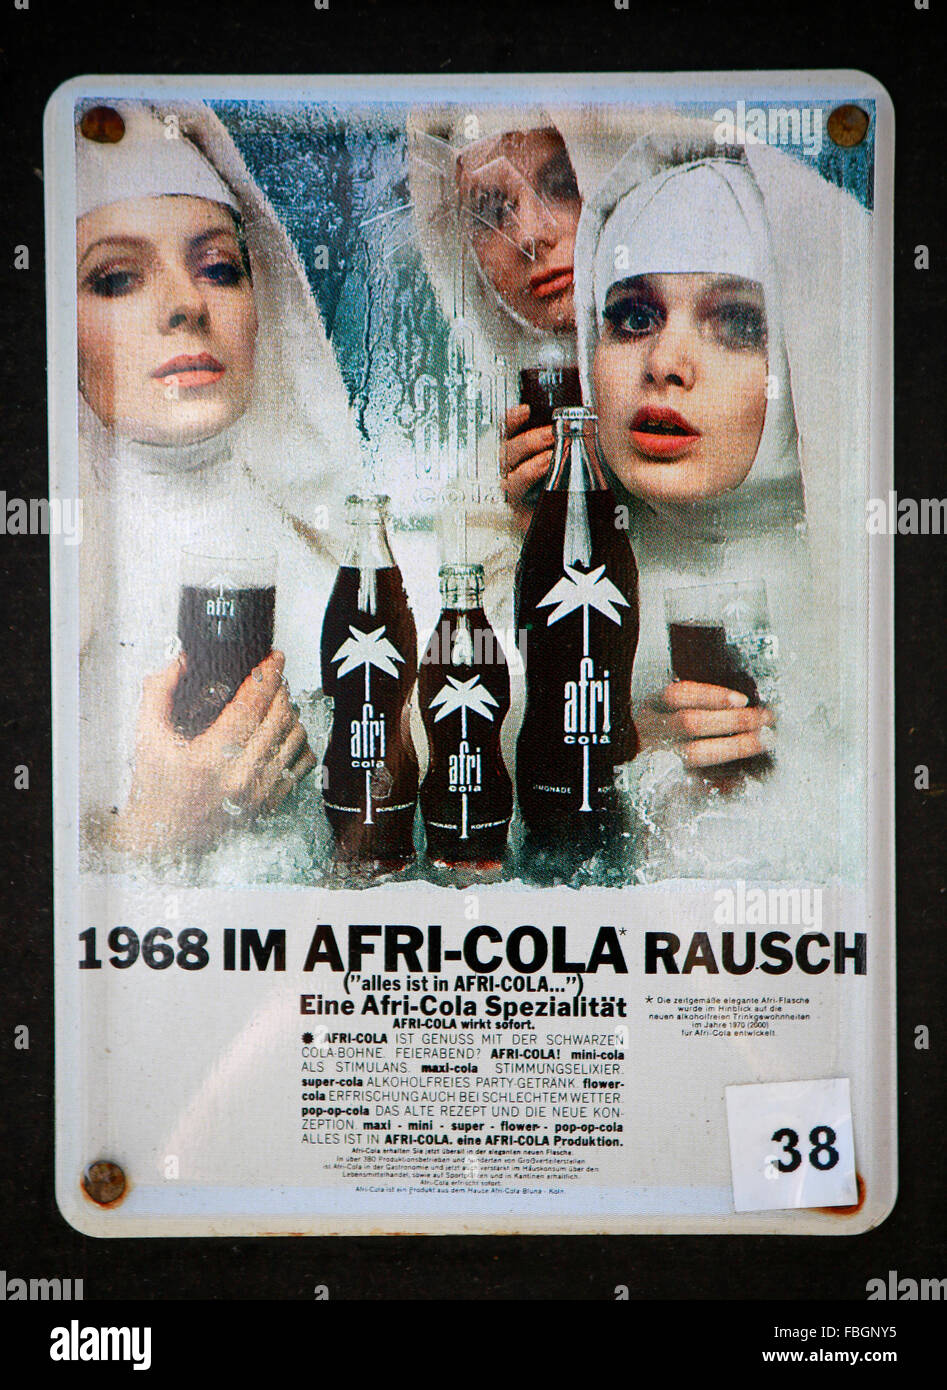 https://c8.alamy.com/comp/FBGNY5/das-logo-der-marke-afri-cola-berlin-FBGNY5.jpg